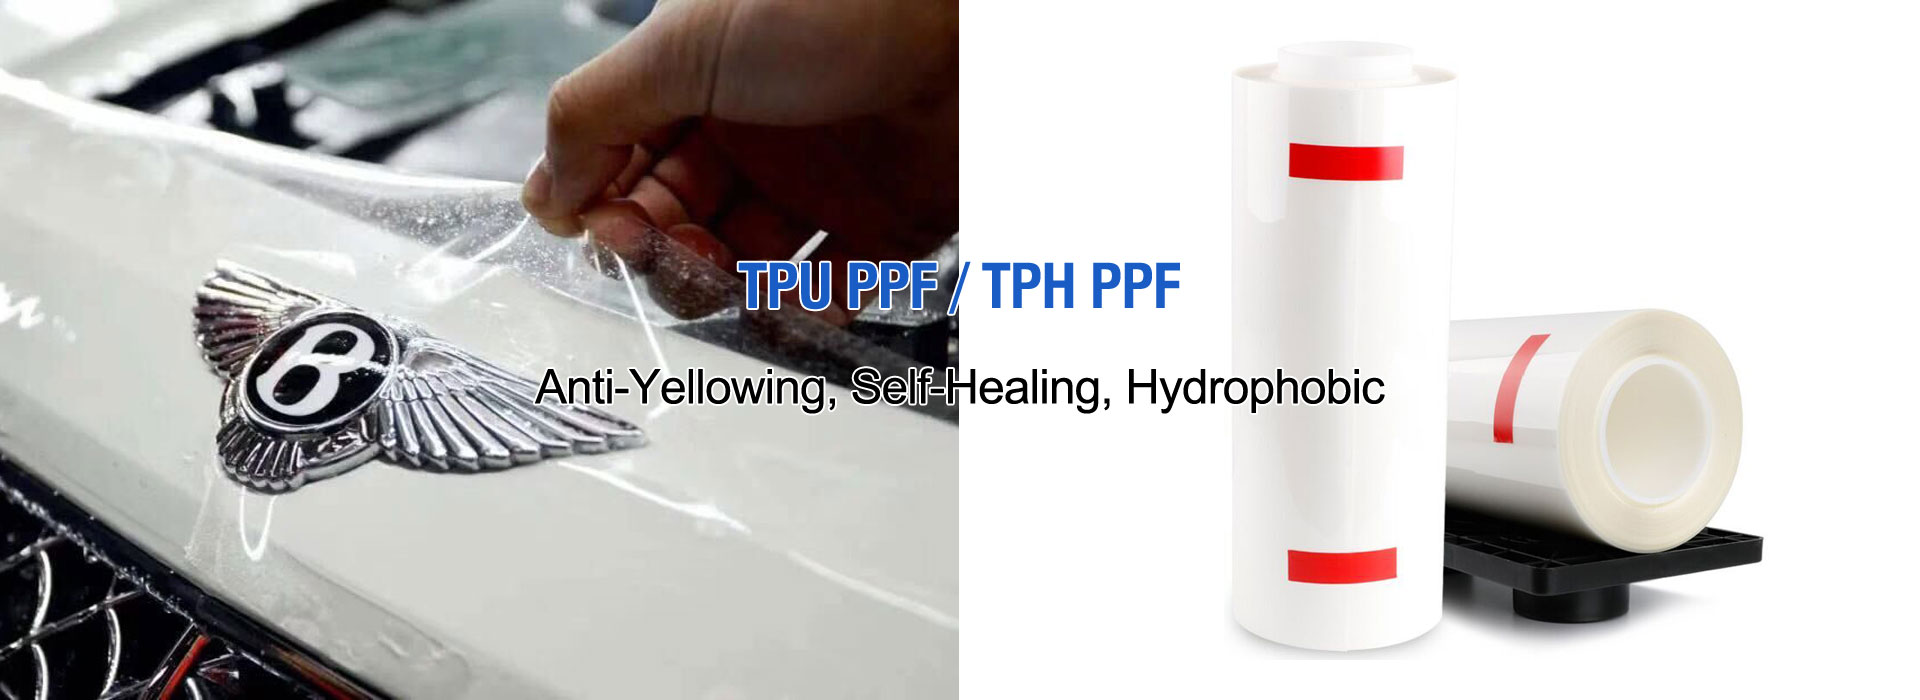 TPU PPE/TPH PPE Κατασκευαστής